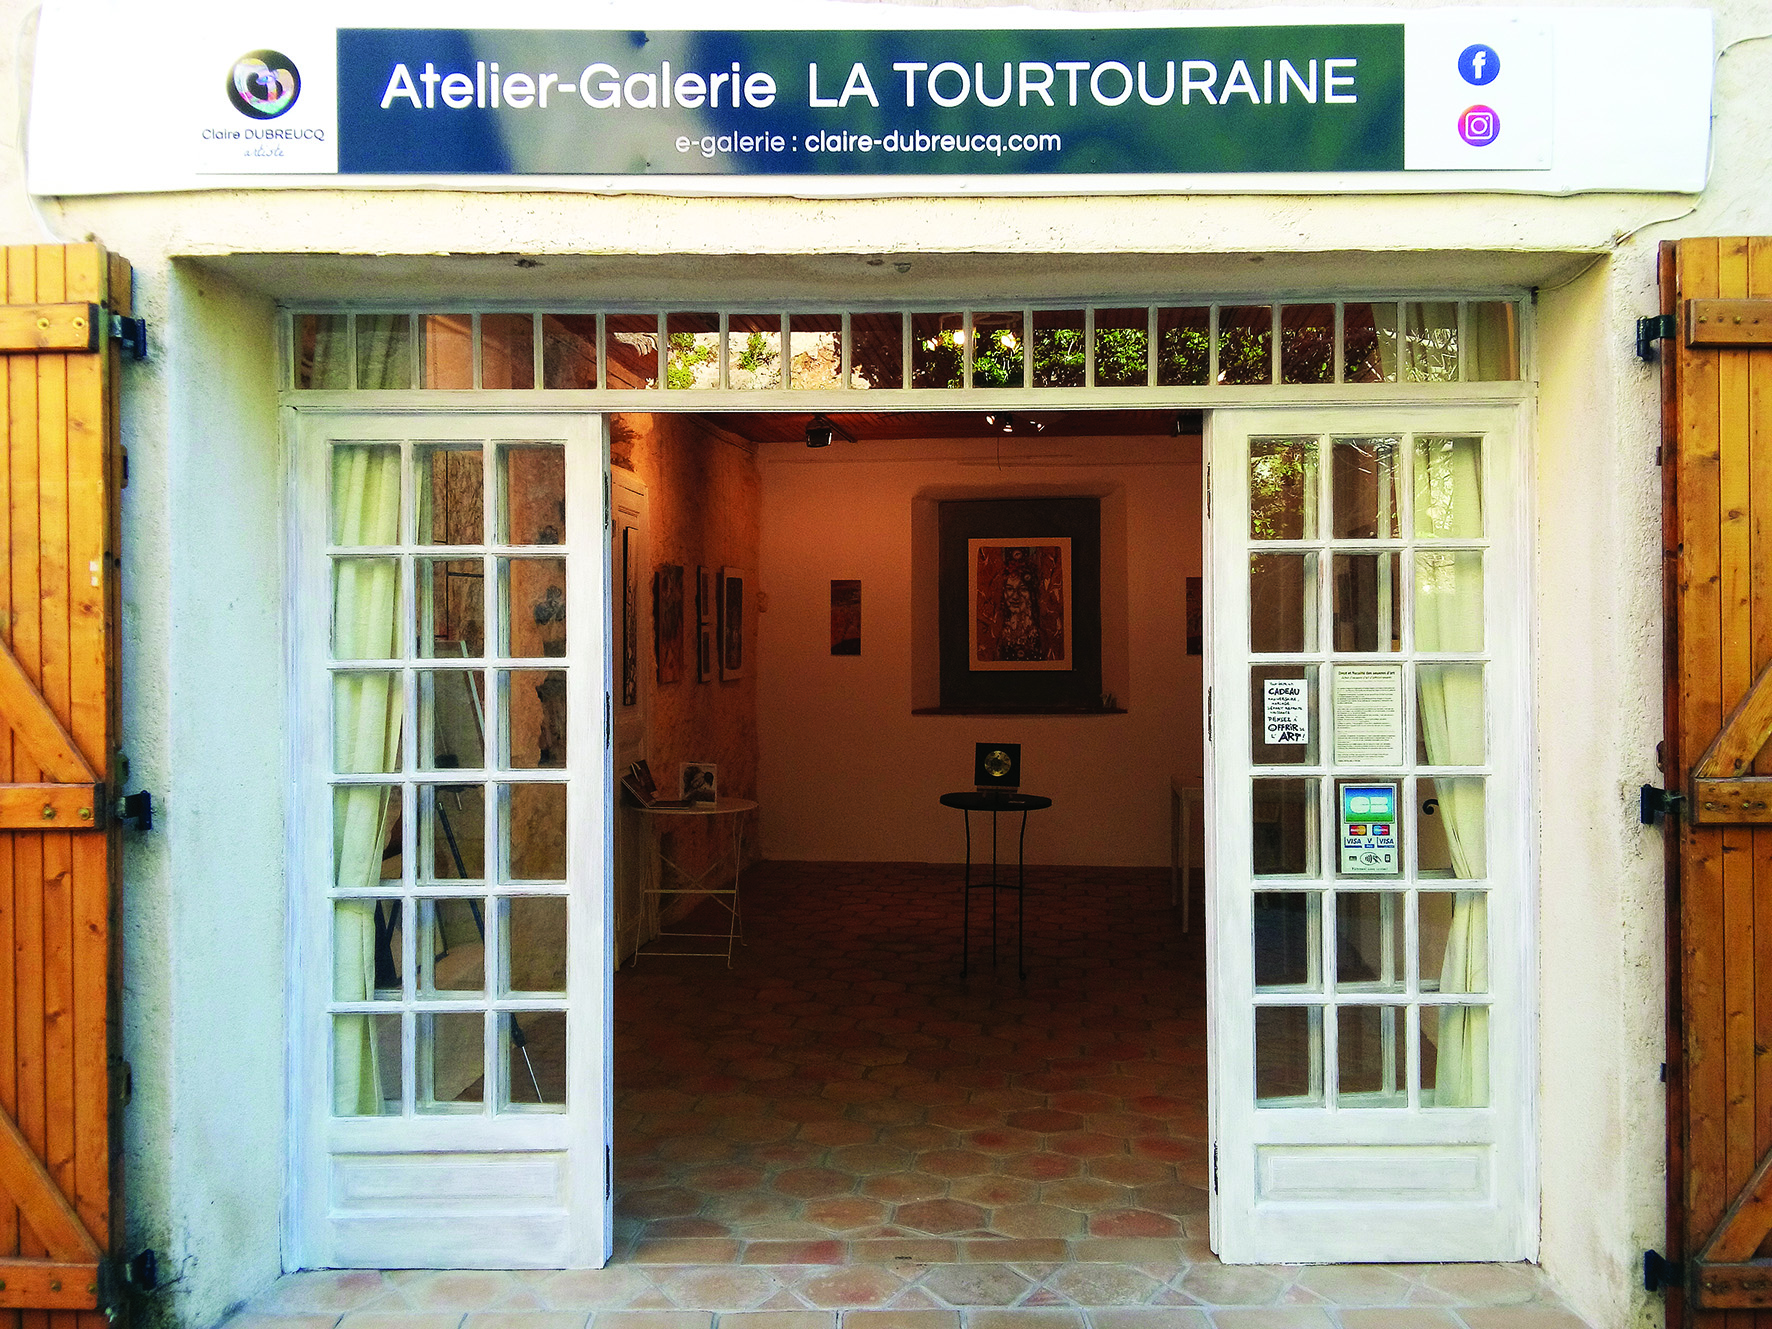 Galerie expo - Atelier-galerie La Tourtouraine